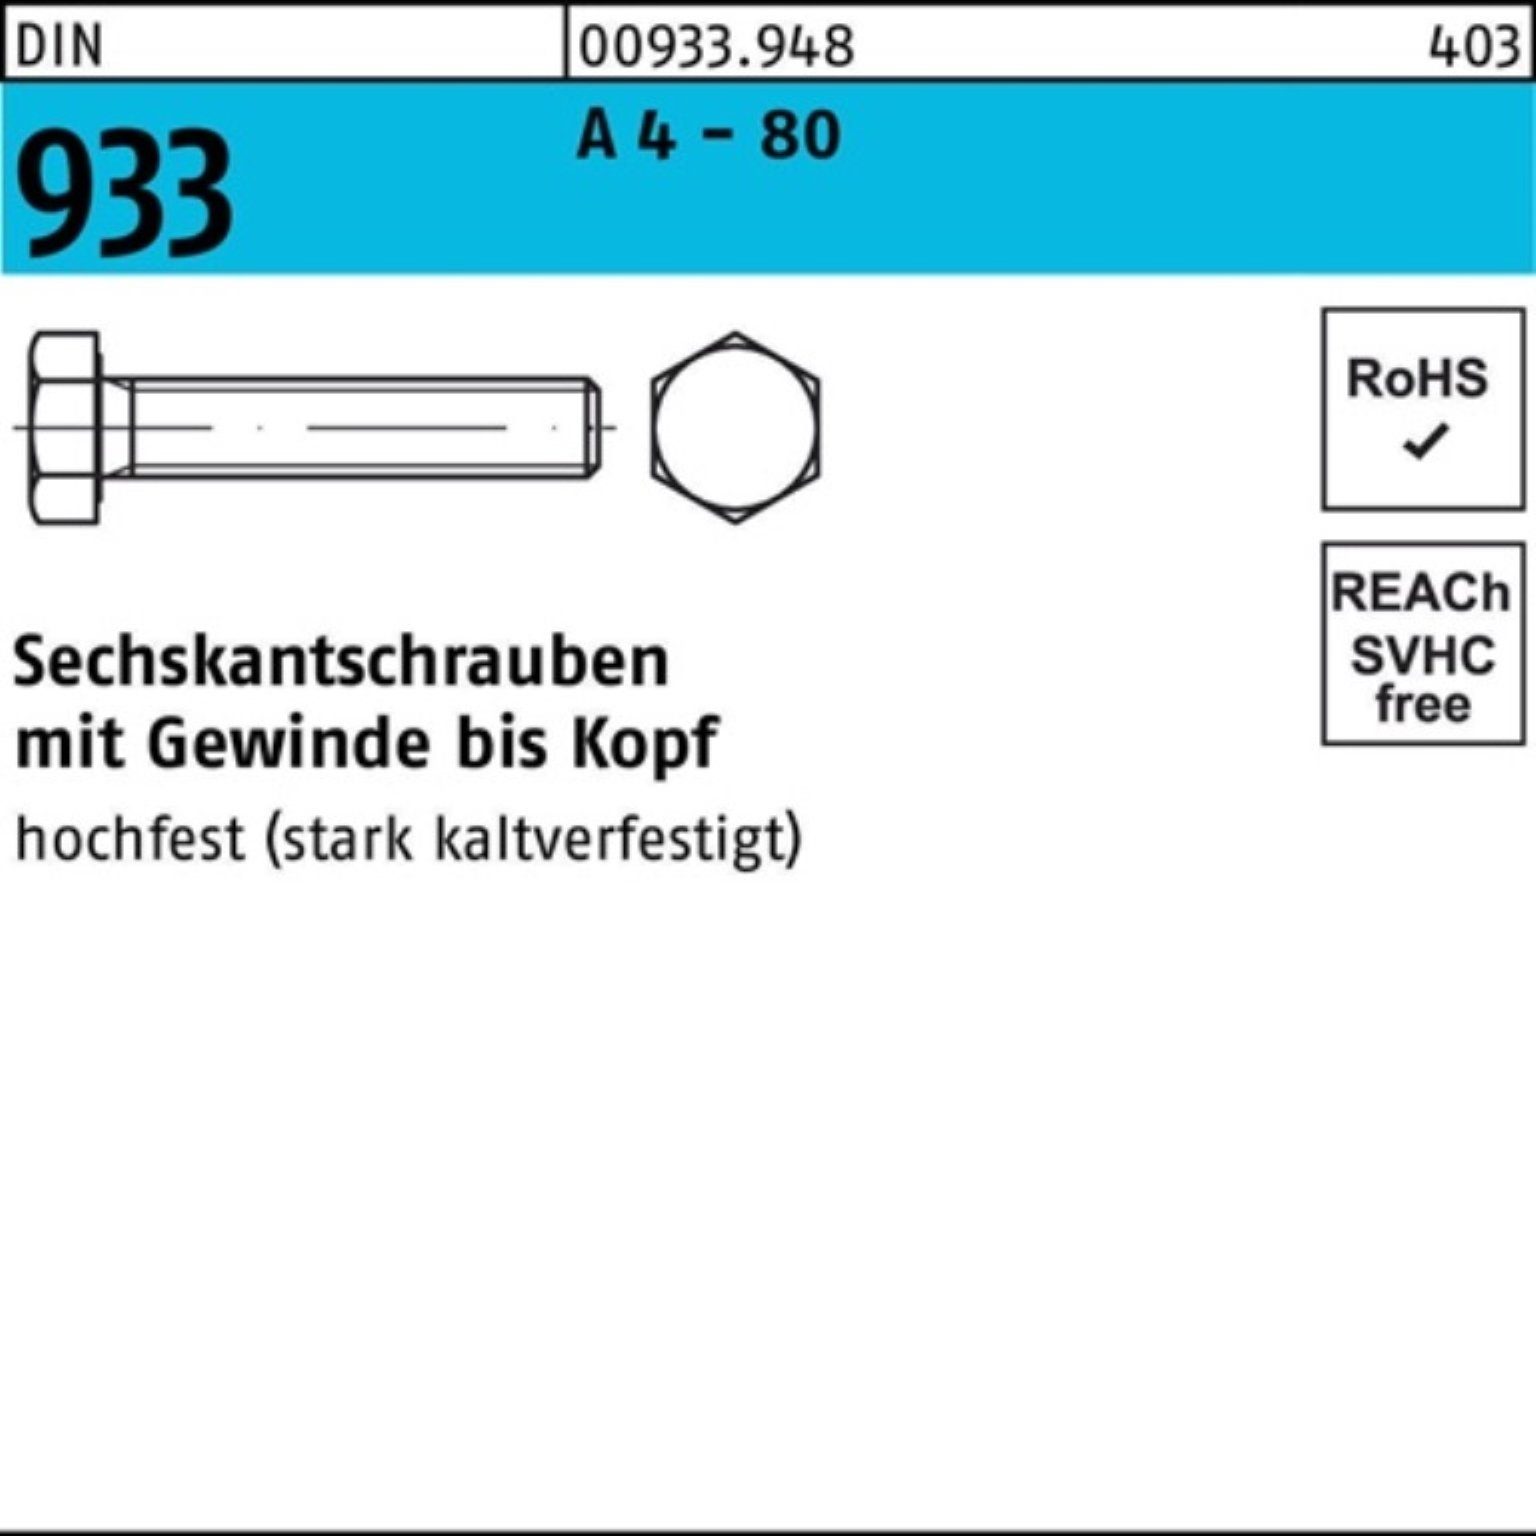 Reyher Sechskantschraube 100er Pack Sechskantschraube DIN 933 VG M20x 100 A 4 - 80 1 Stück DIN